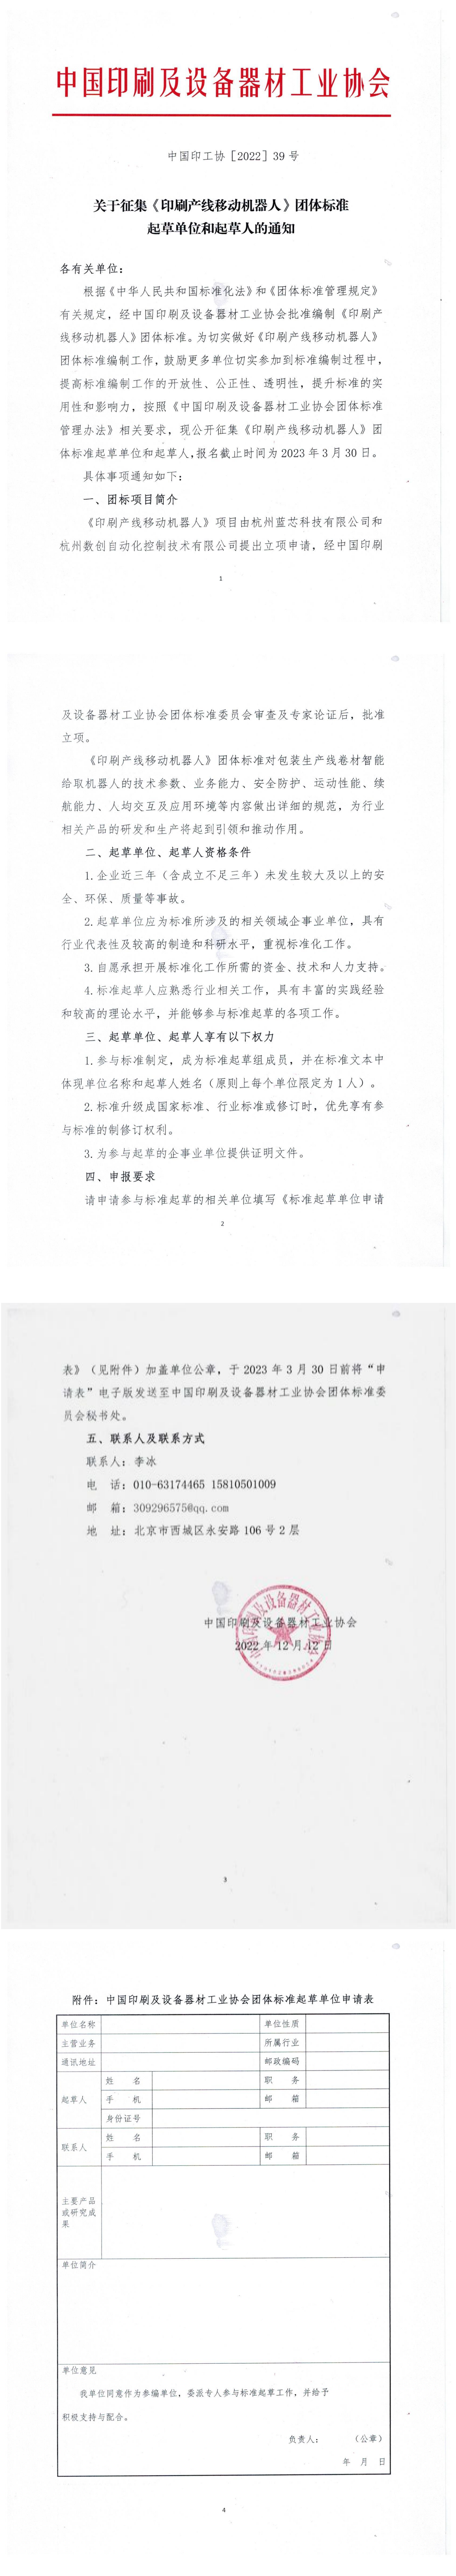 中國印工協《印刷產線移動機器人》團體標準起草單位征集通知_00.png